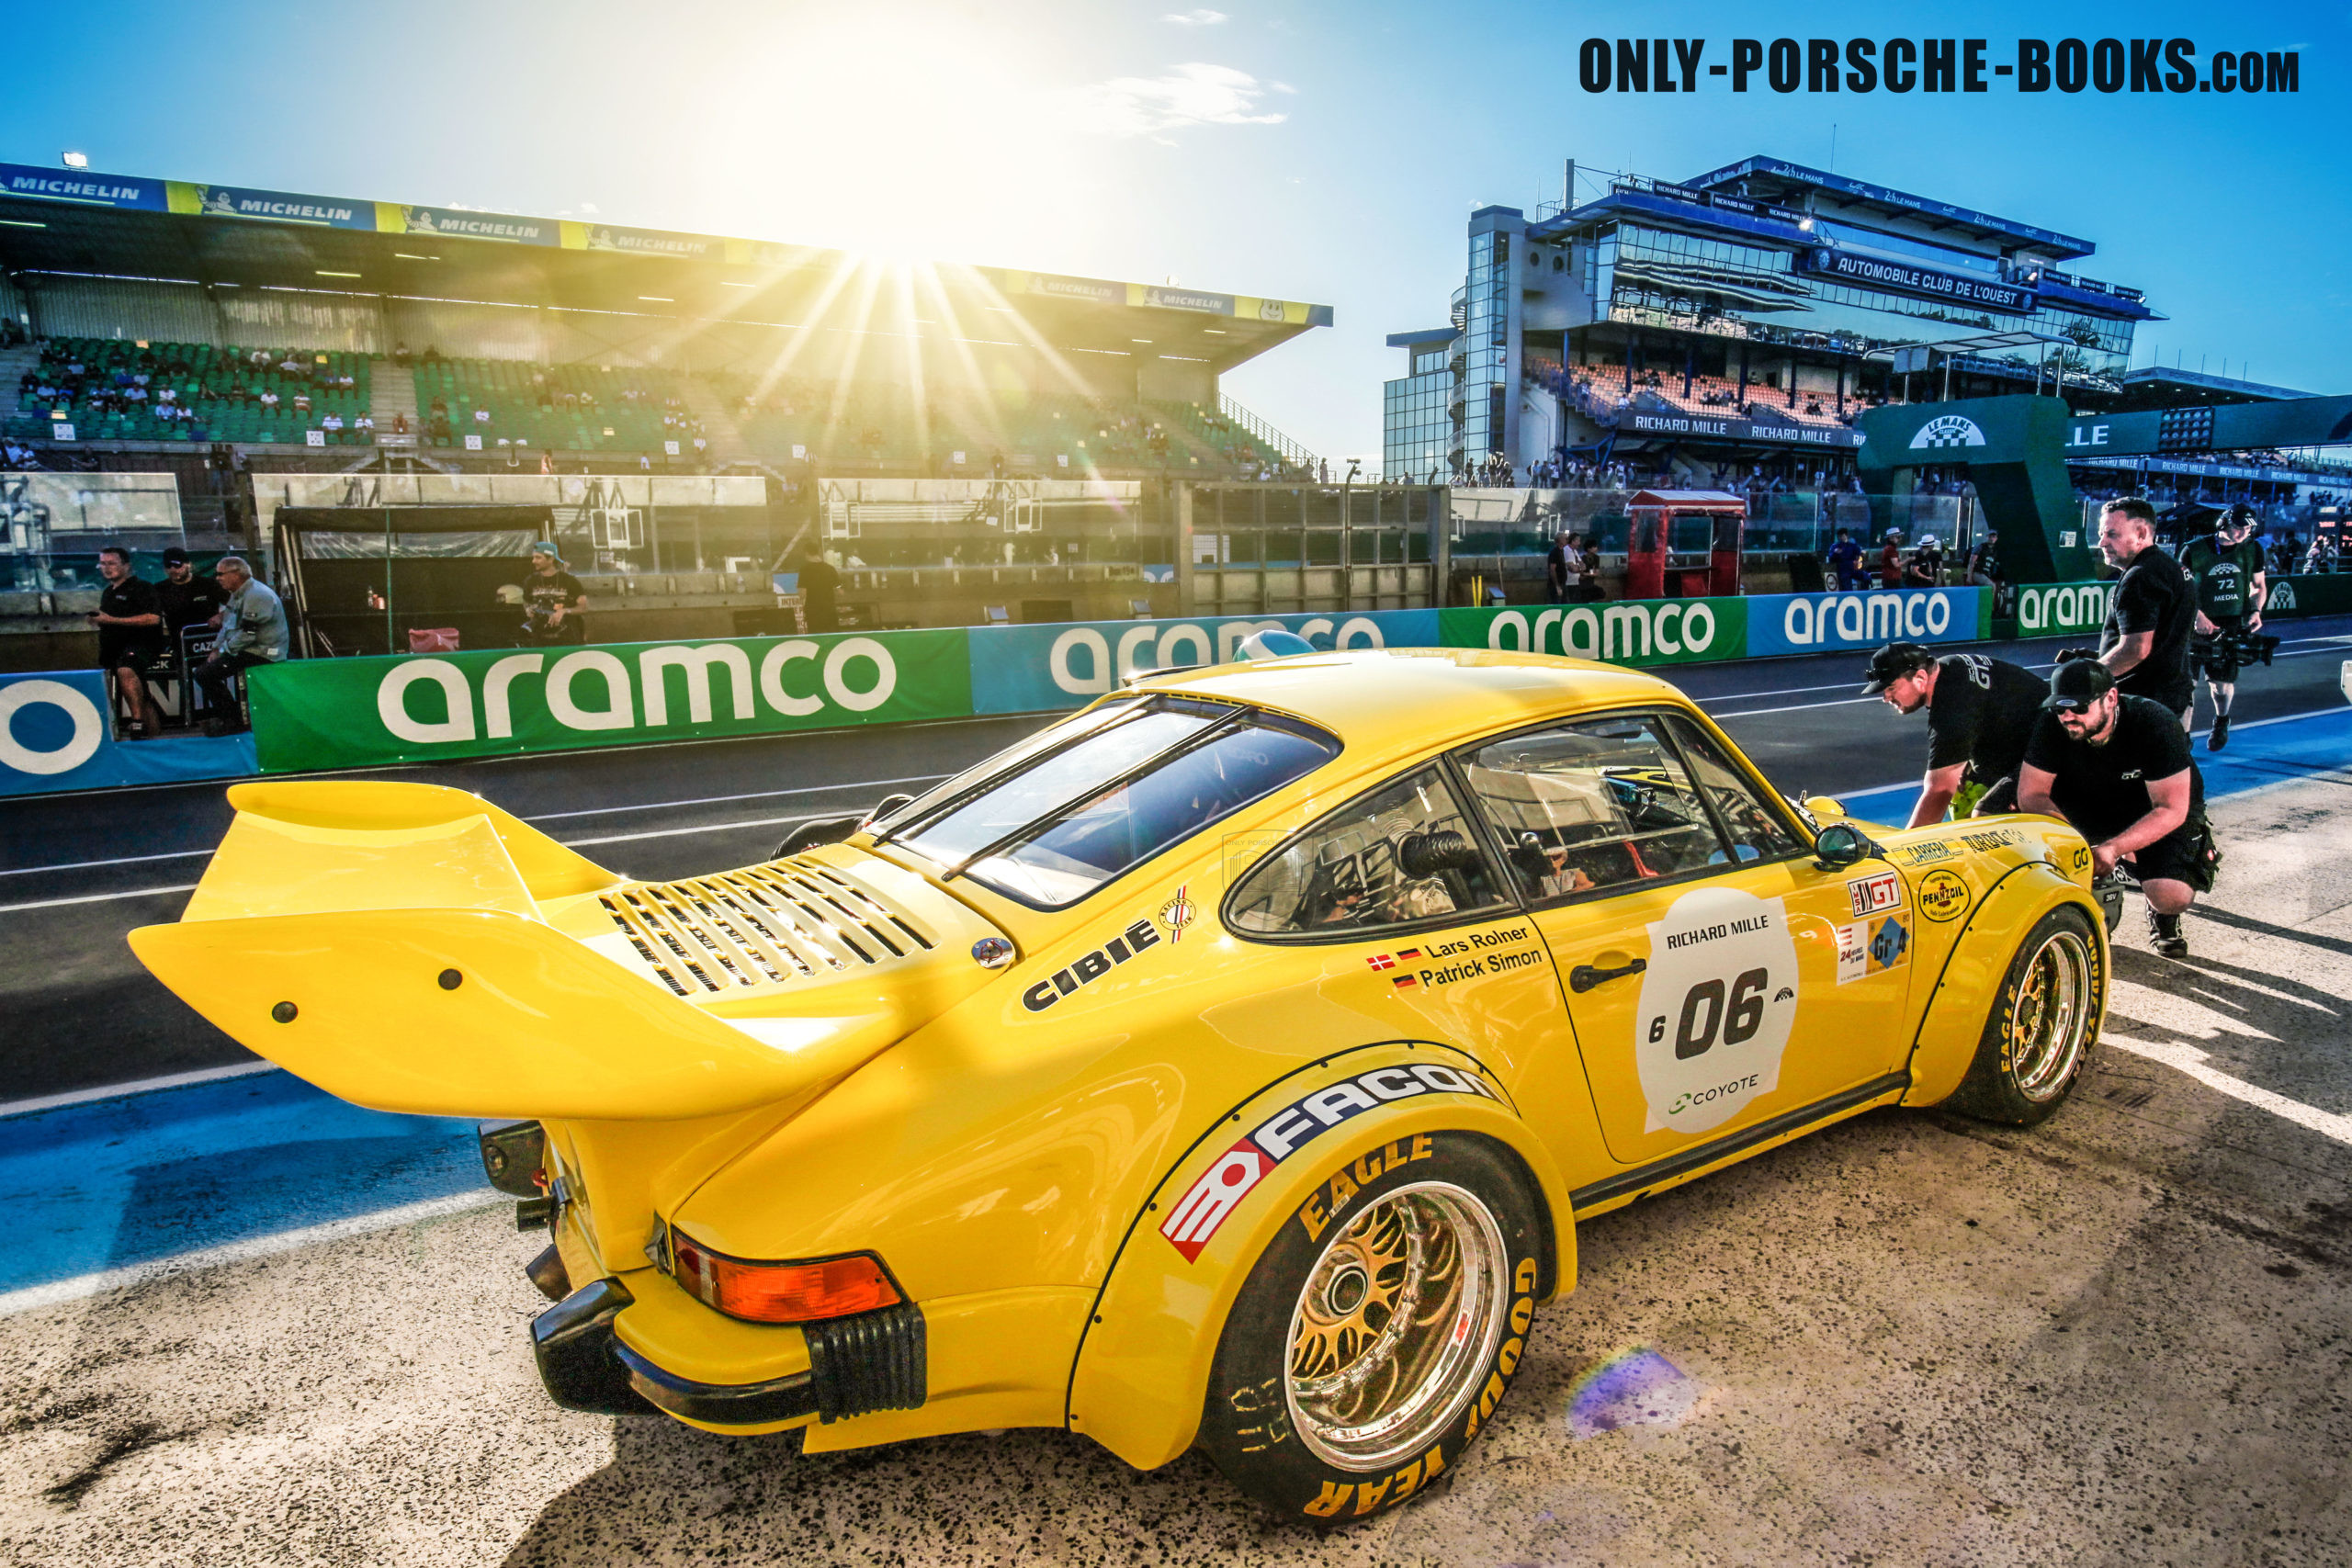 Porsche zeigt den neuen 911 für die GT3-Rennserien